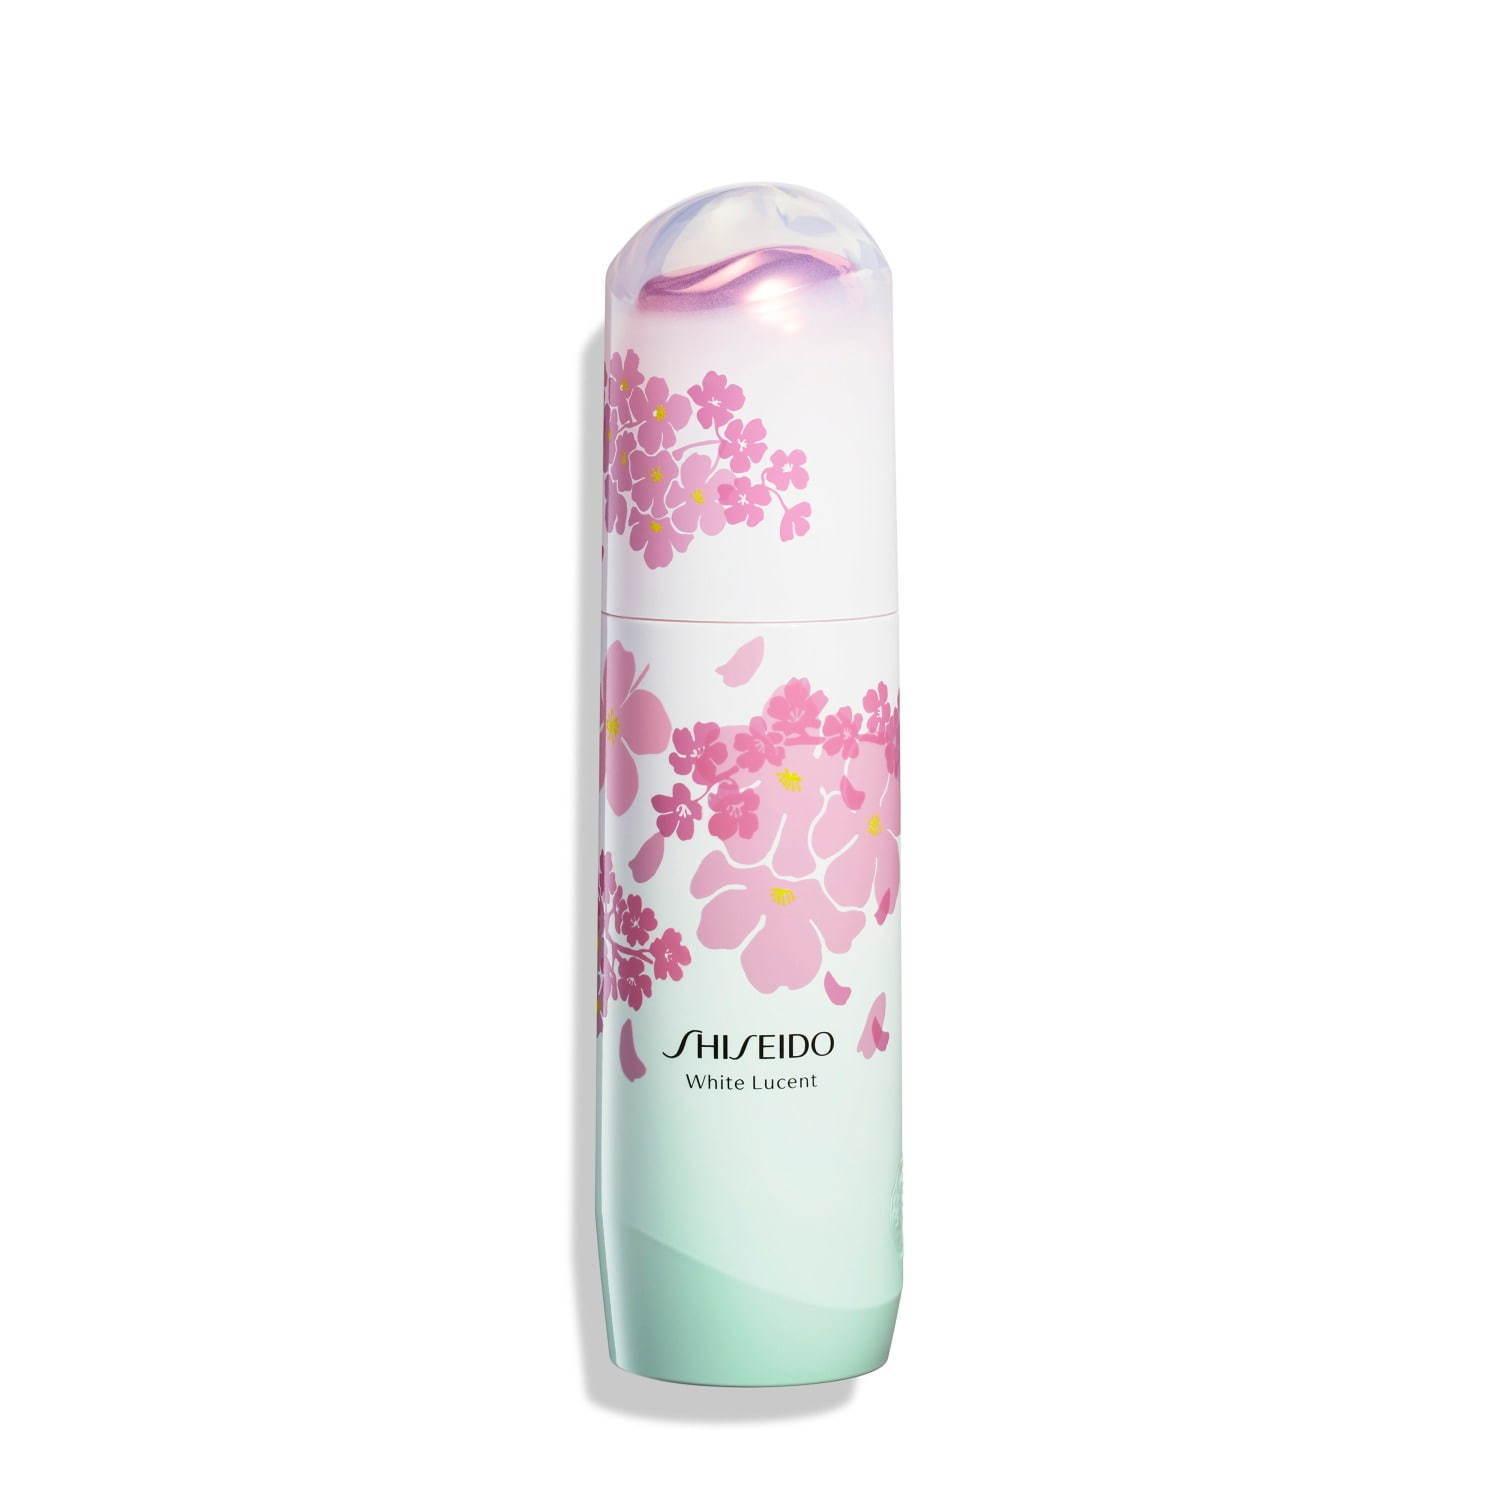 SHISEIDO ホワイトルーセントの新美白美容パウダー、限定“桜”デザインの美容液も コピー